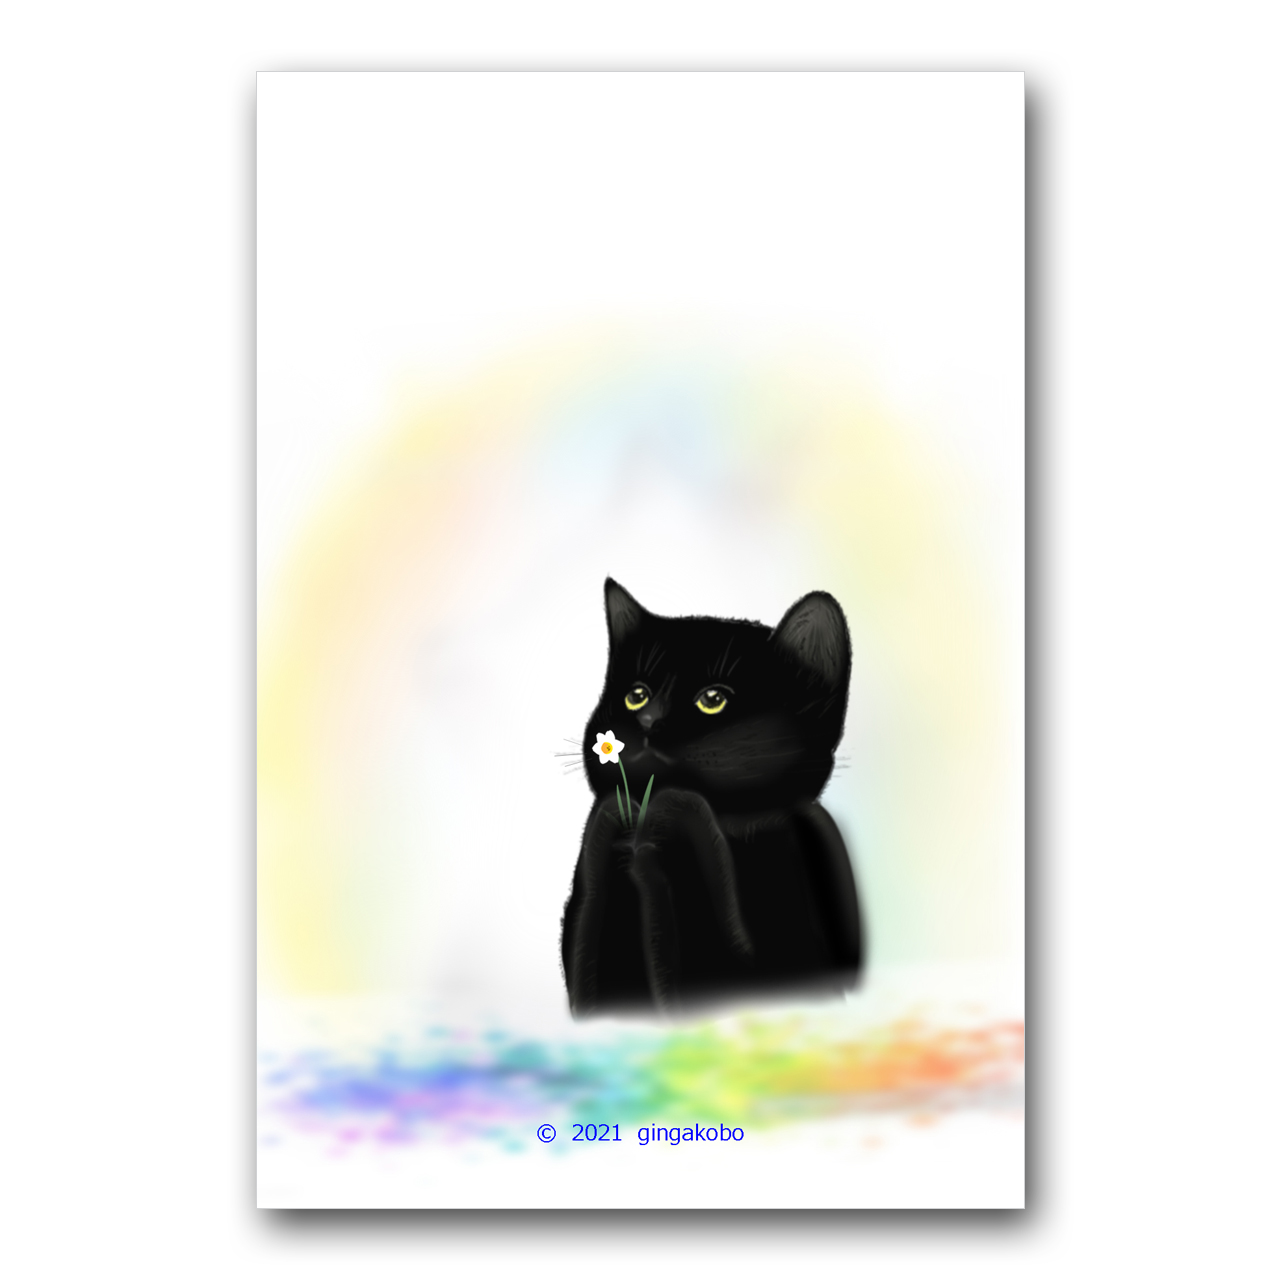 おねがい 猫 黒猫 水仙 ほっこり癒しのイラストポストカード2枚組 No 1270 Iichi ハンドメイド クラフト作品 手仕事品の通販